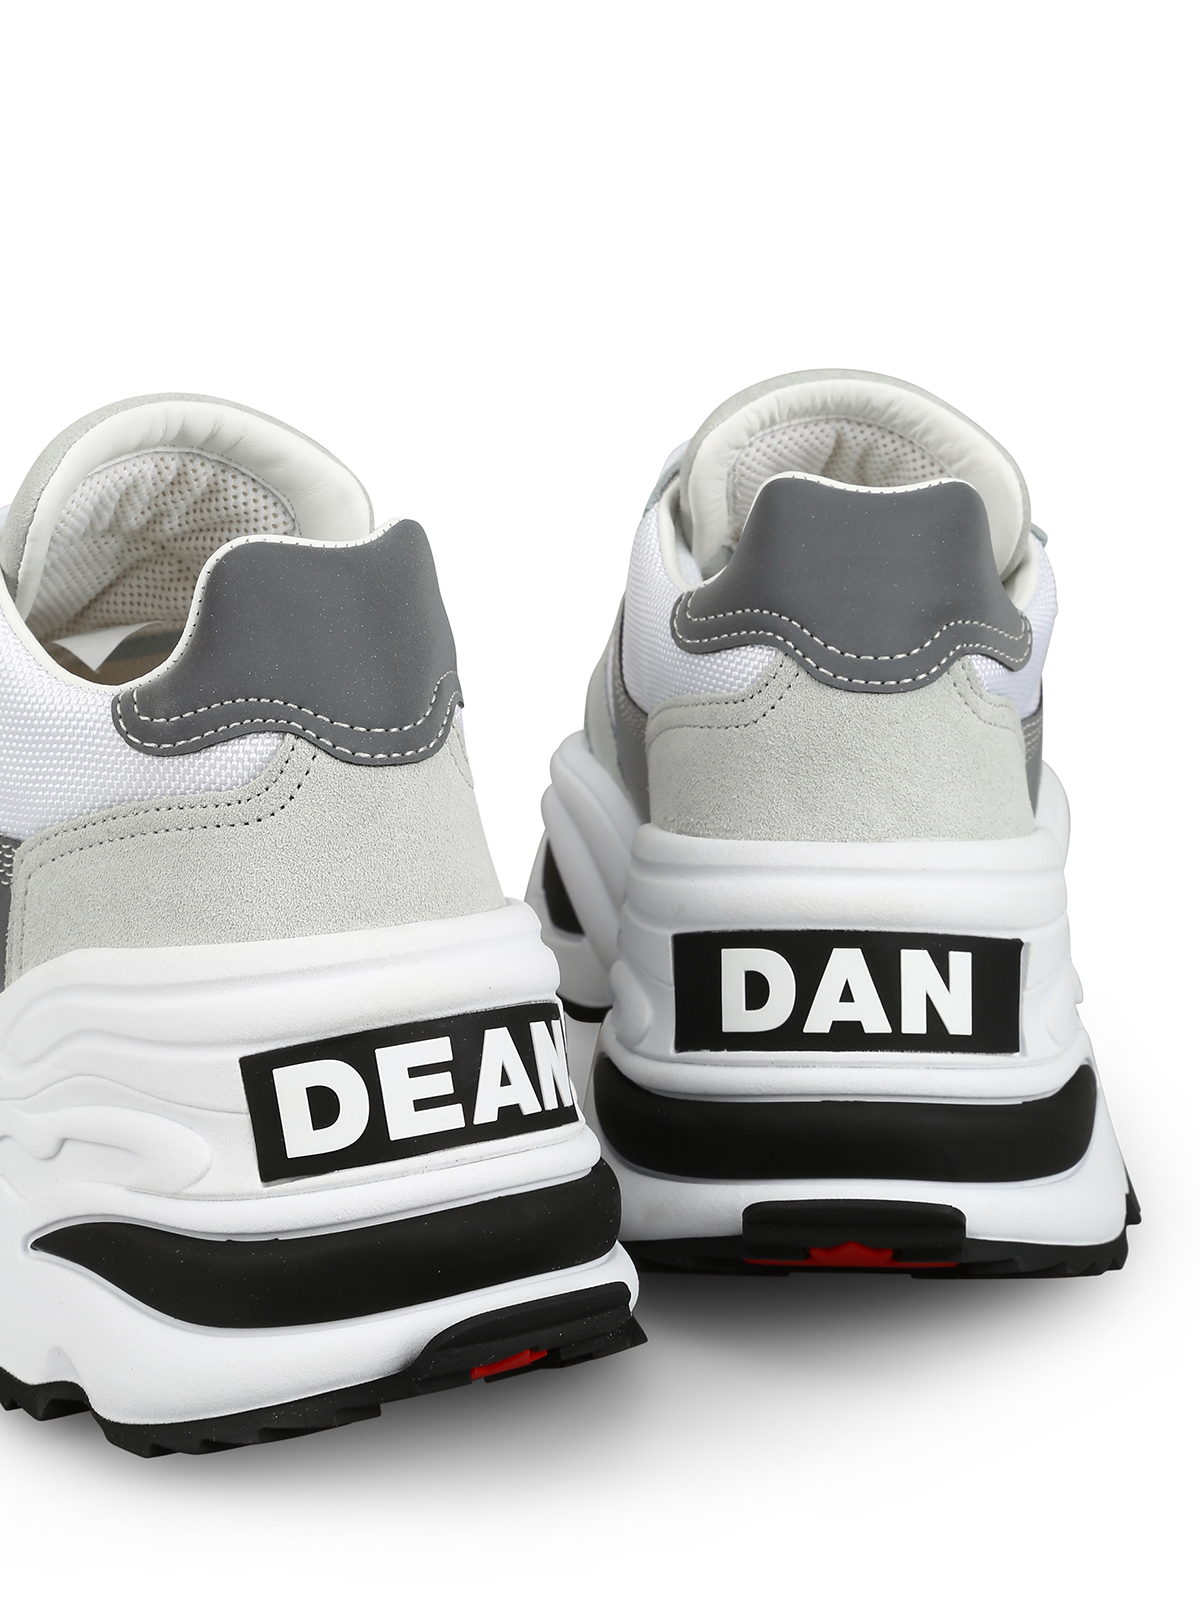 dsquared dean and dan sneakers